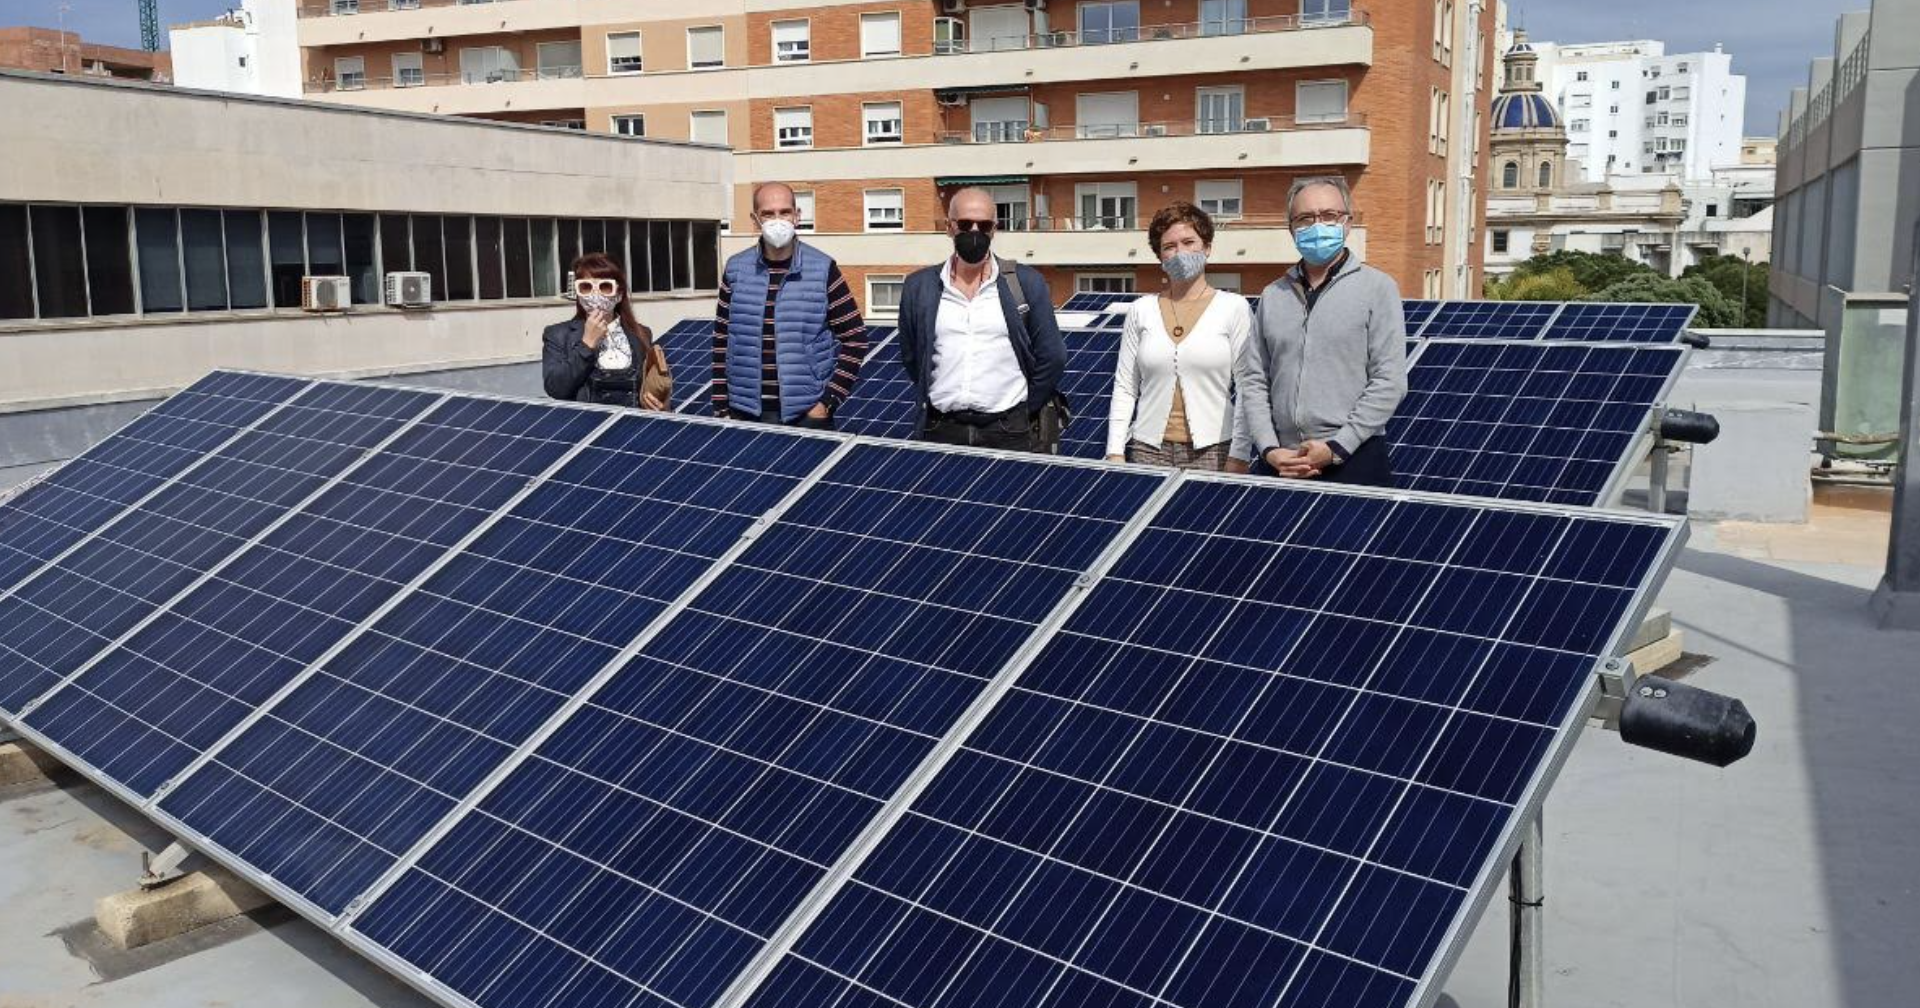 Instalación fotovoltaica en Cádiz, en una imagen reciente.